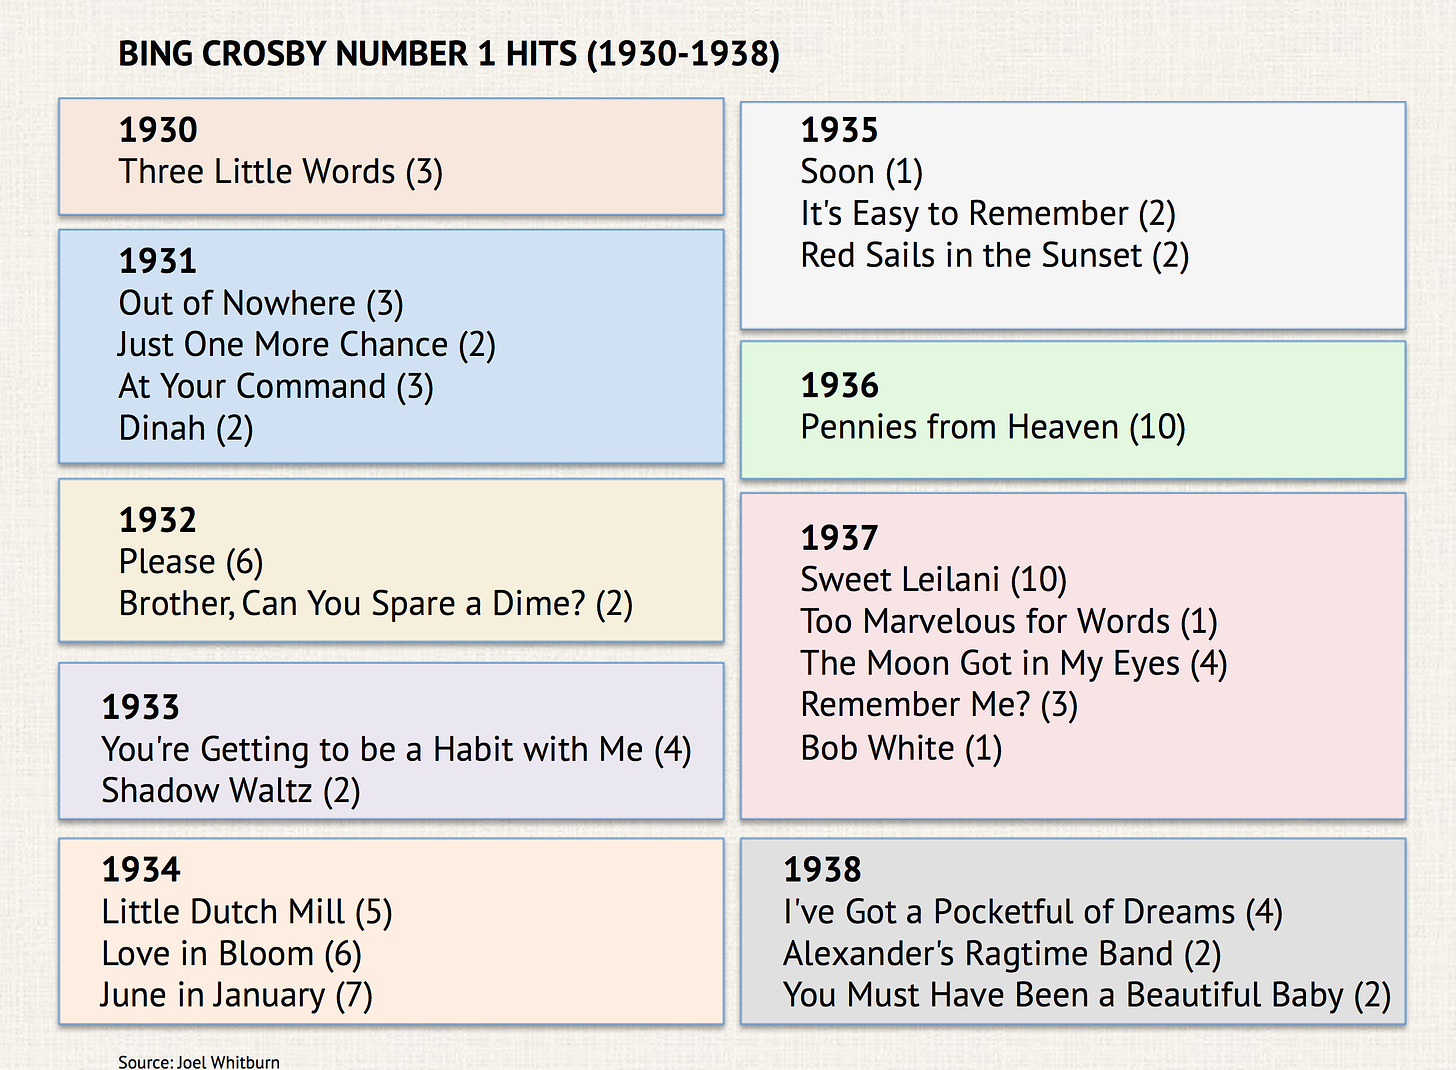 List of Bing Crosby's hit songs